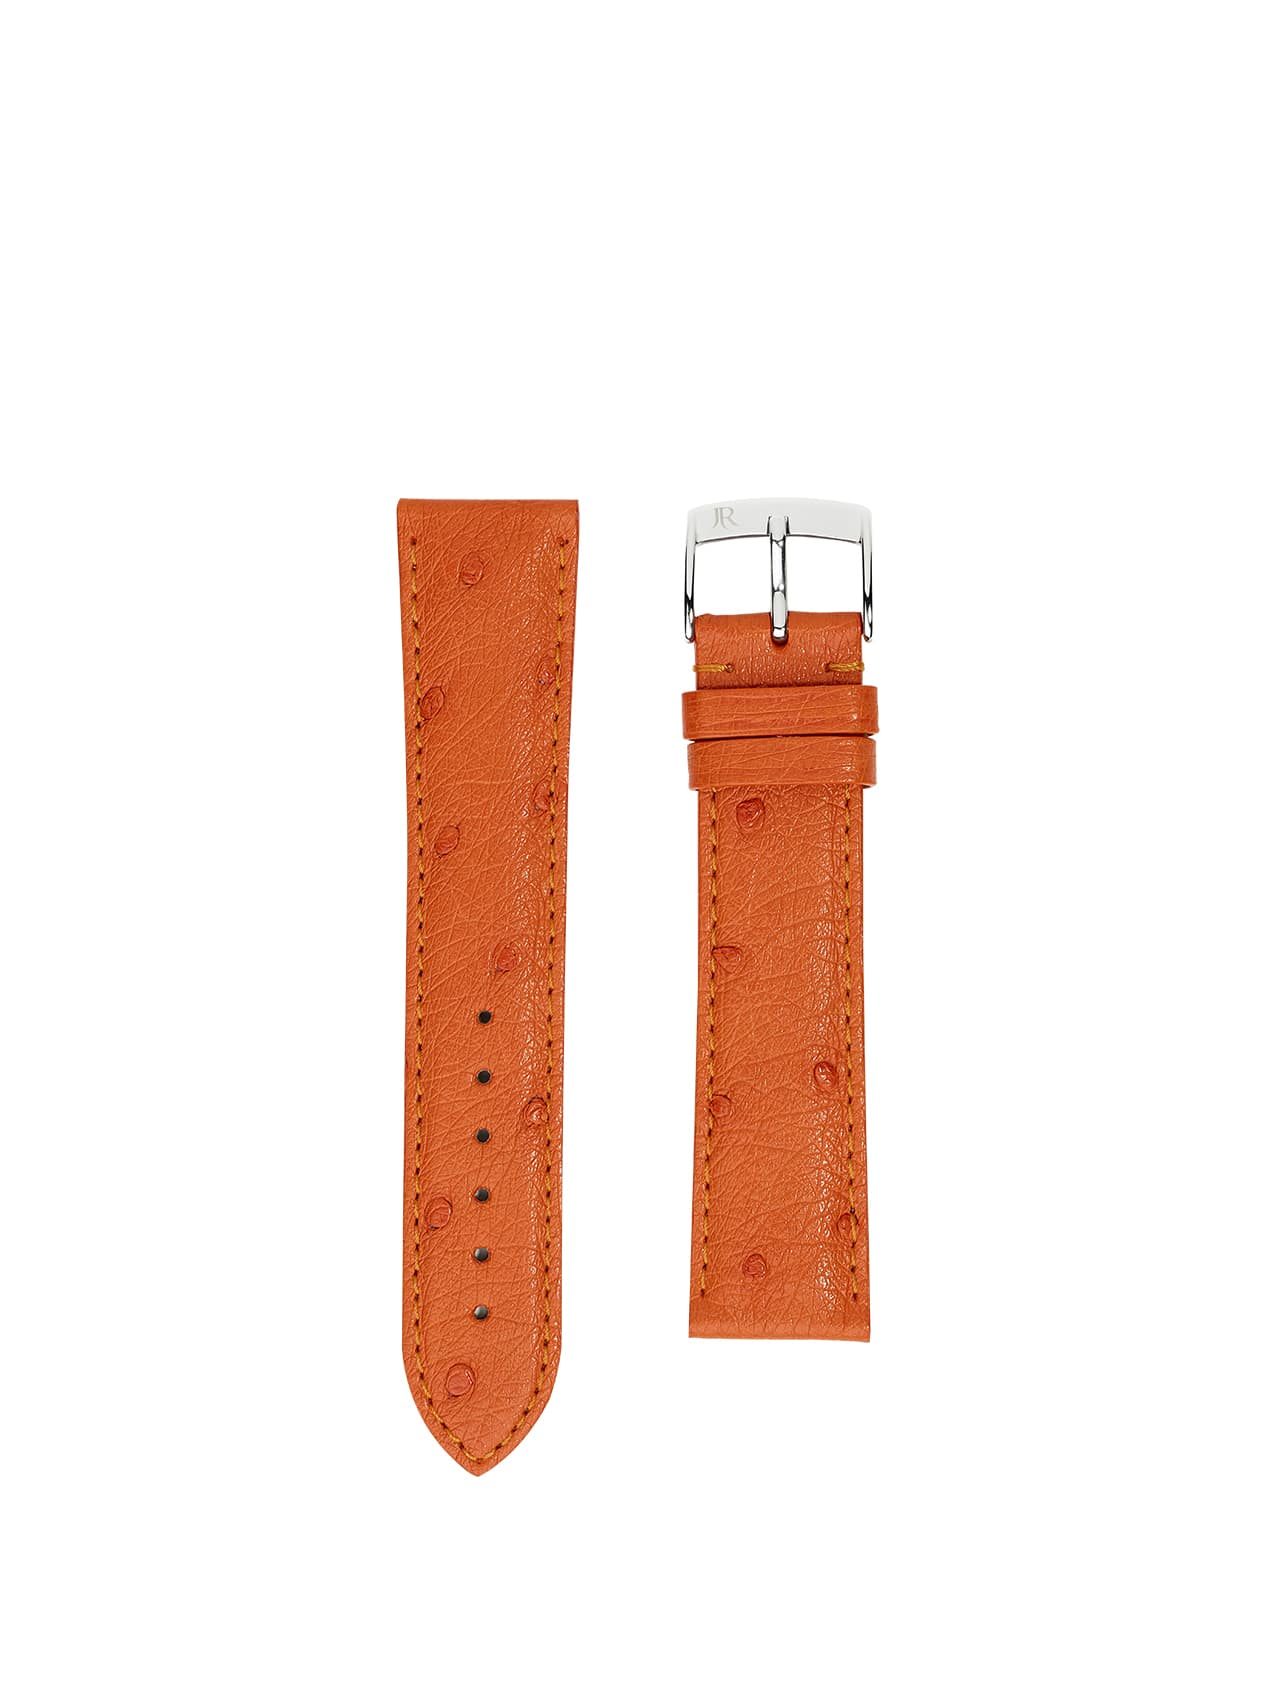 jean rousseau watch strap ostrich orange